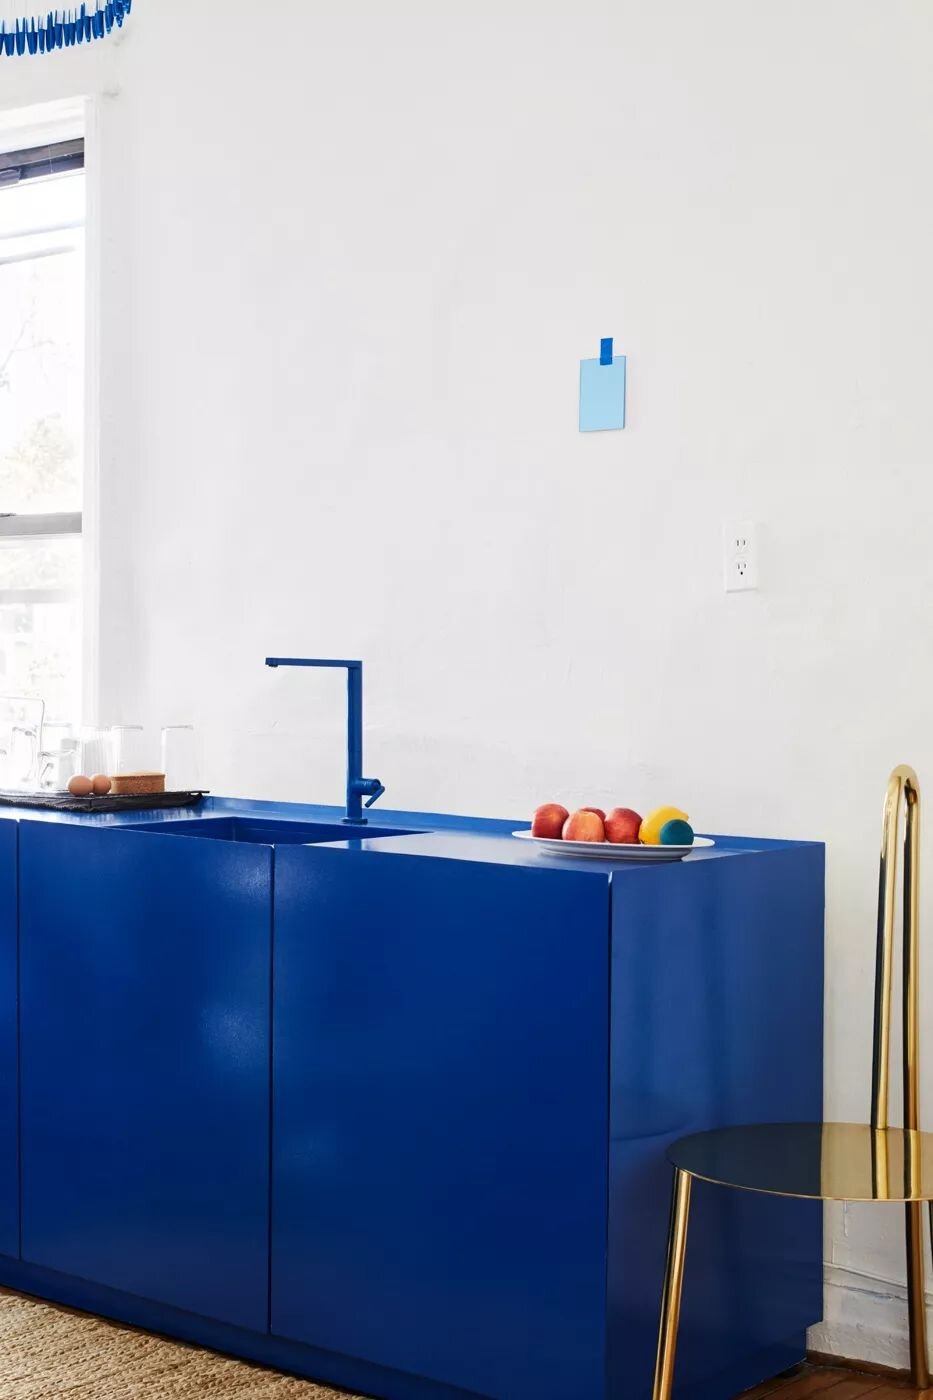 ilaria fatone inspirations - une cuisine en bleu klein